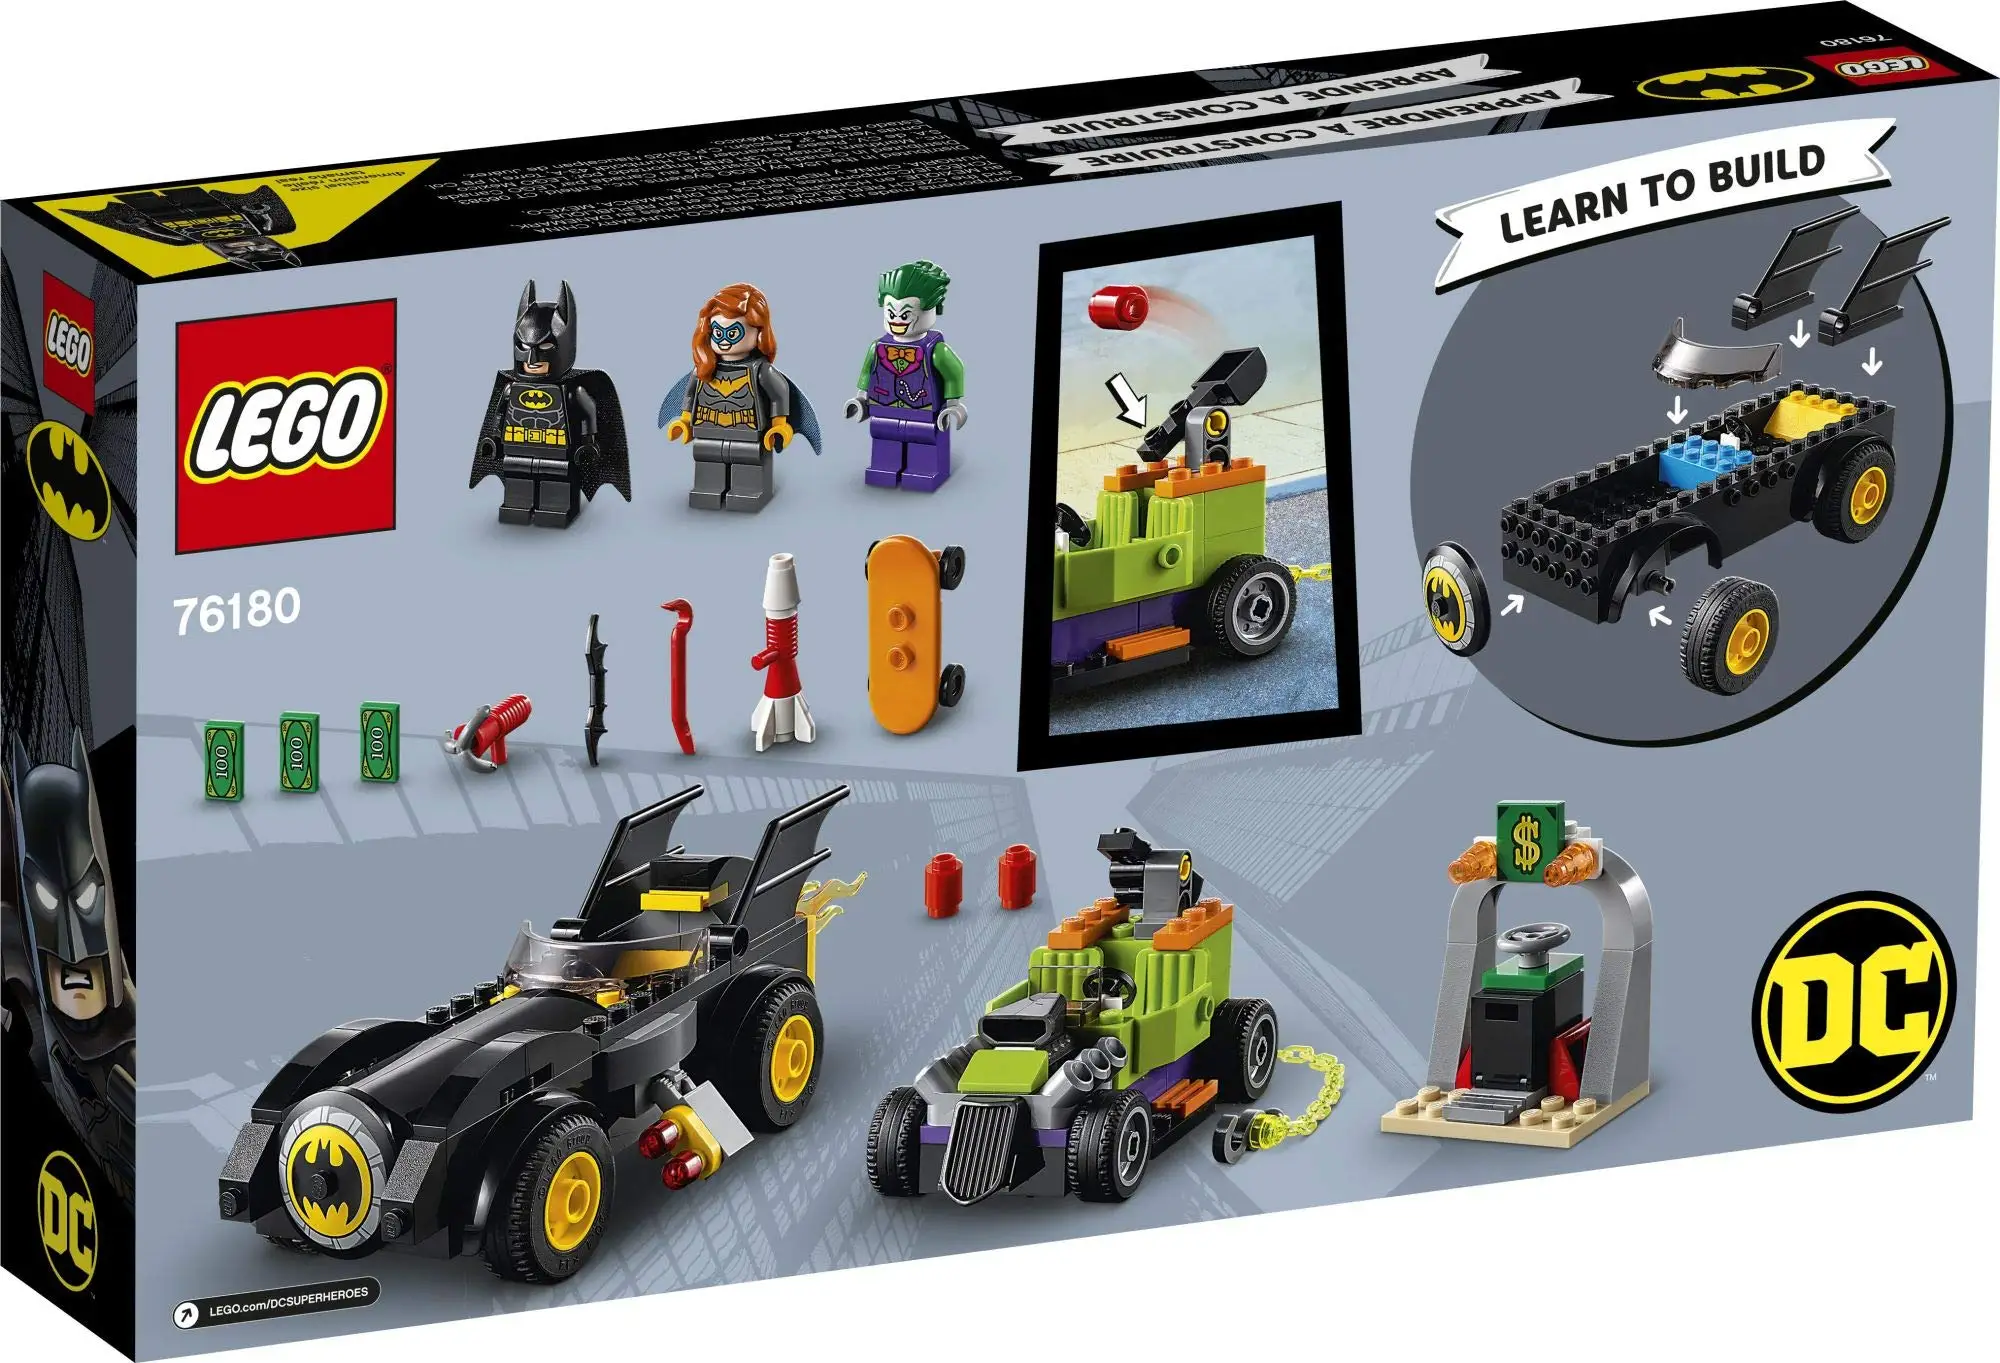 Jeux de construction Lego Batmobile Chase: Batman™ Vs. The Joker™, Affiches, cadeaux, merch